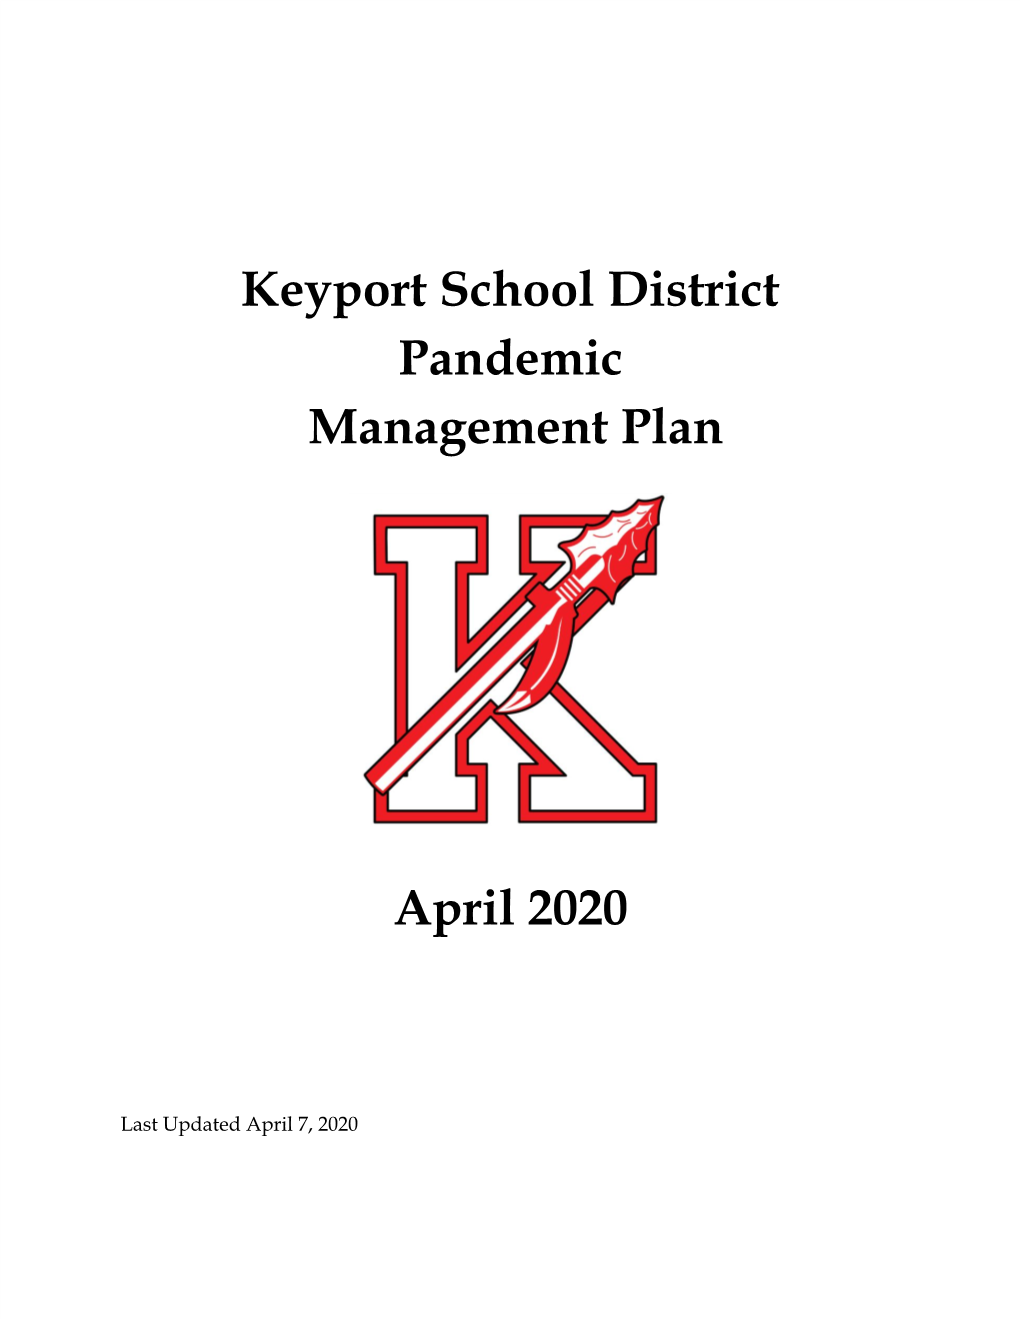 Keyport School District Pandemic Management Plan April 2020